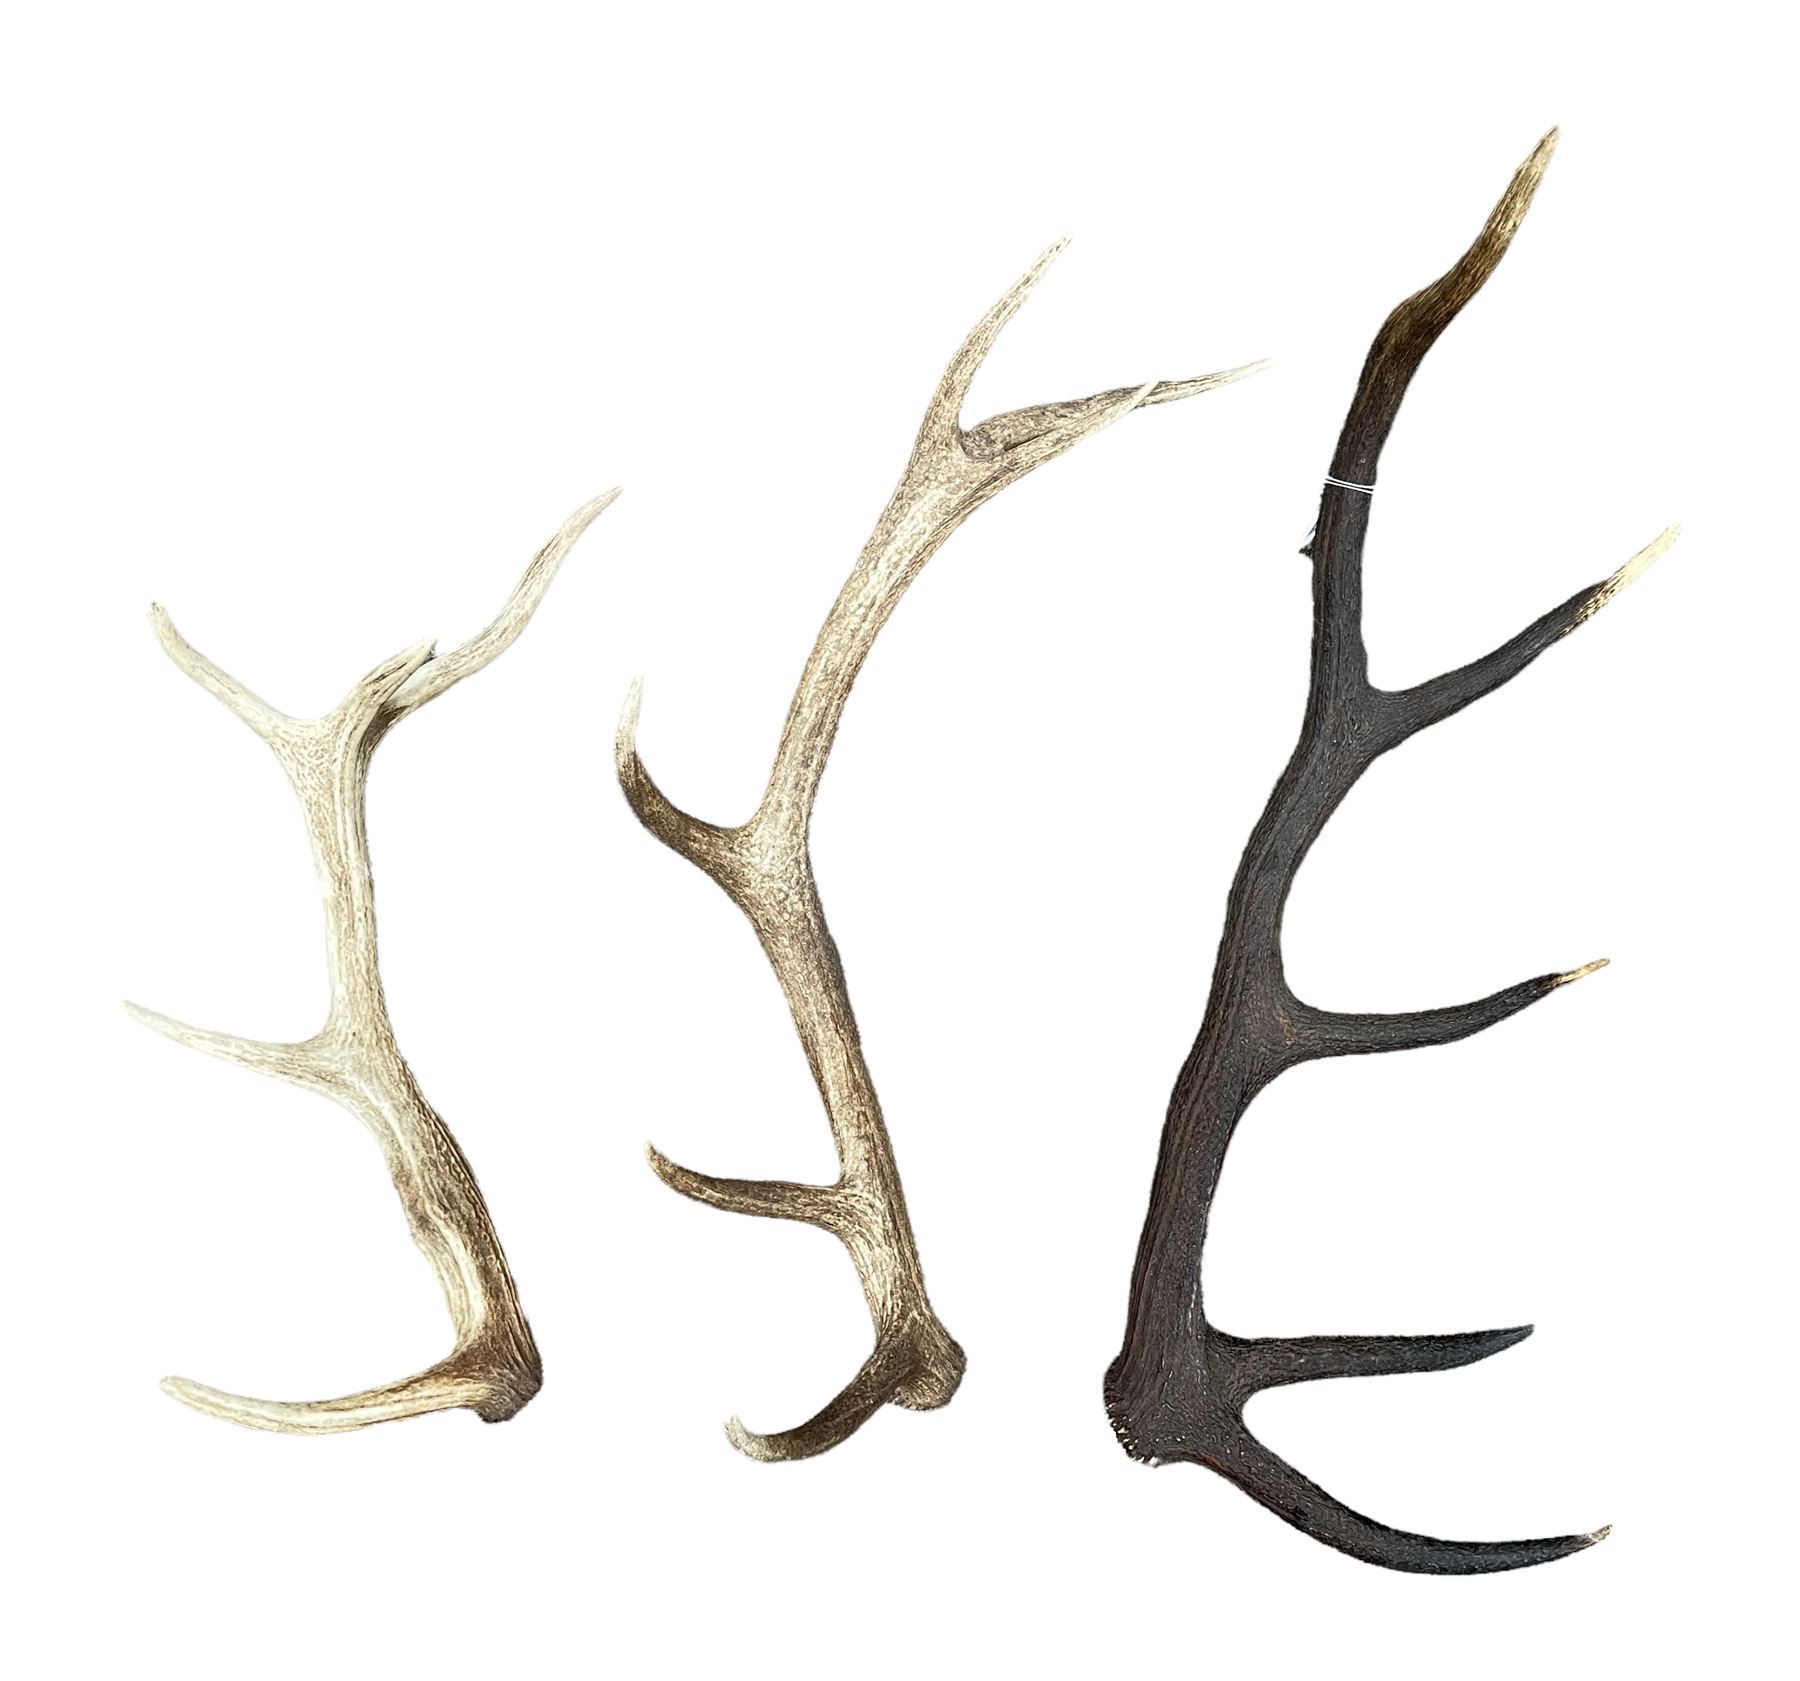 Three loose deer antlers max length 63cm